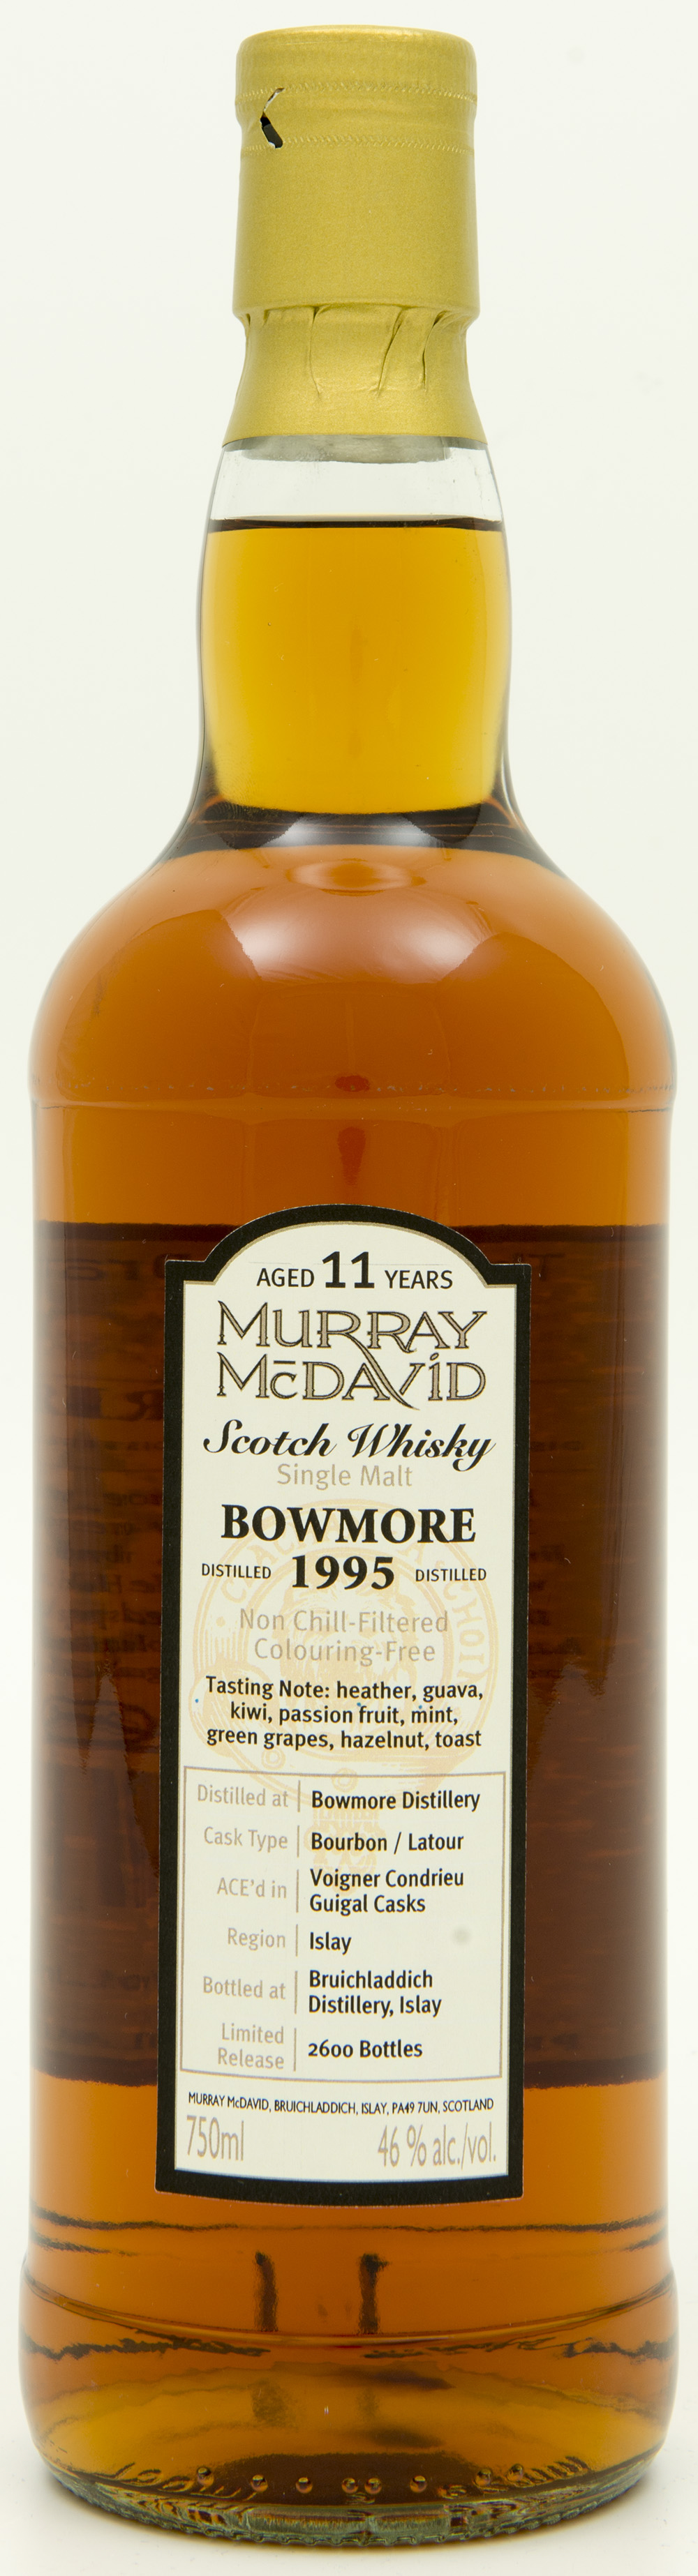 Billede: DSC_6569 Murray McDavid Bowmore 11 years 1995 - bottle front.jpg